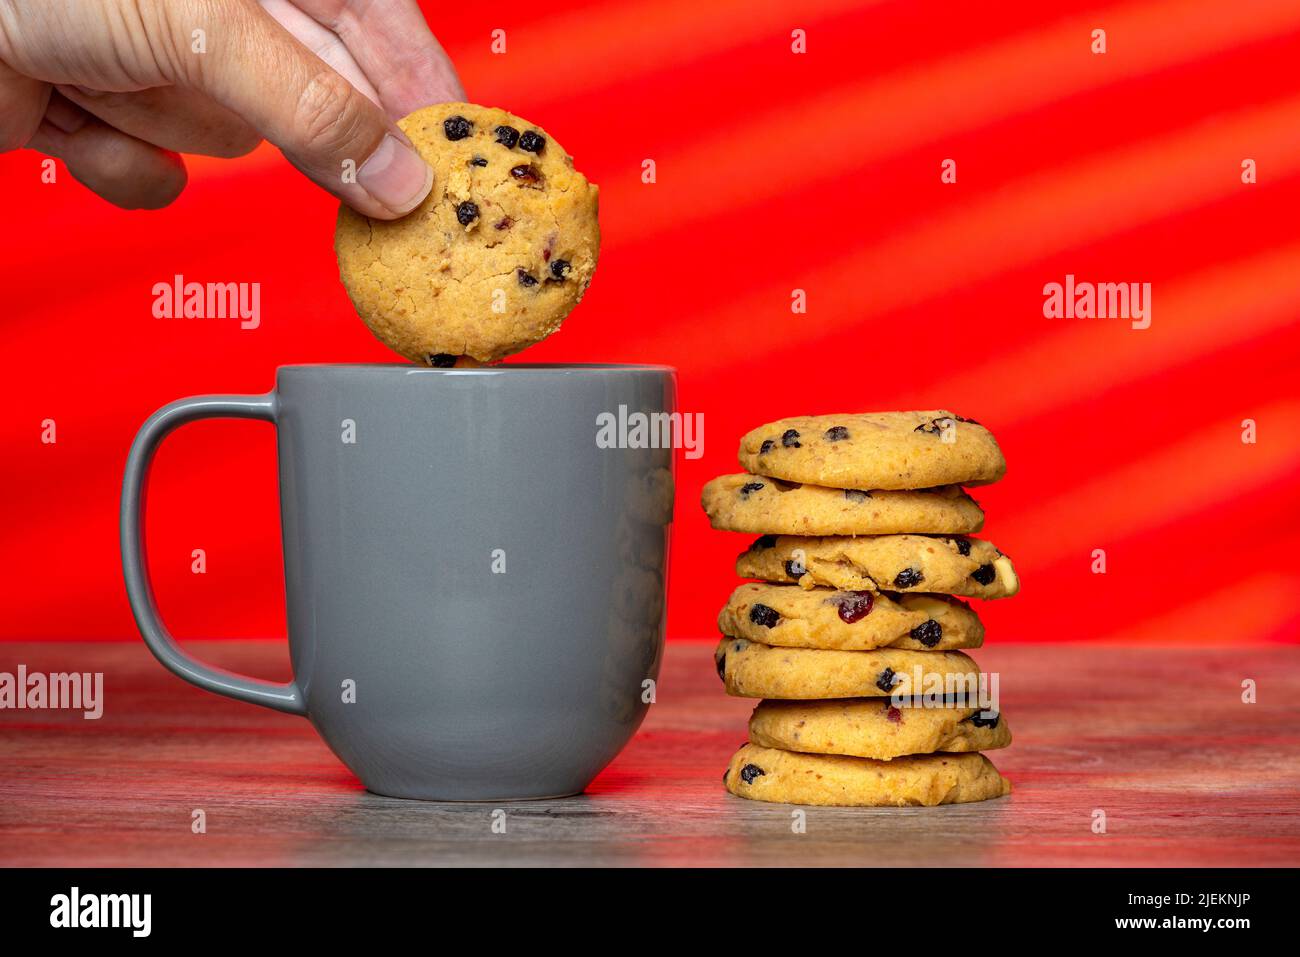 pila de galletas caseras y una taza gris sobre un fondo rojo con una mano dunking una galleta. Foto de stock